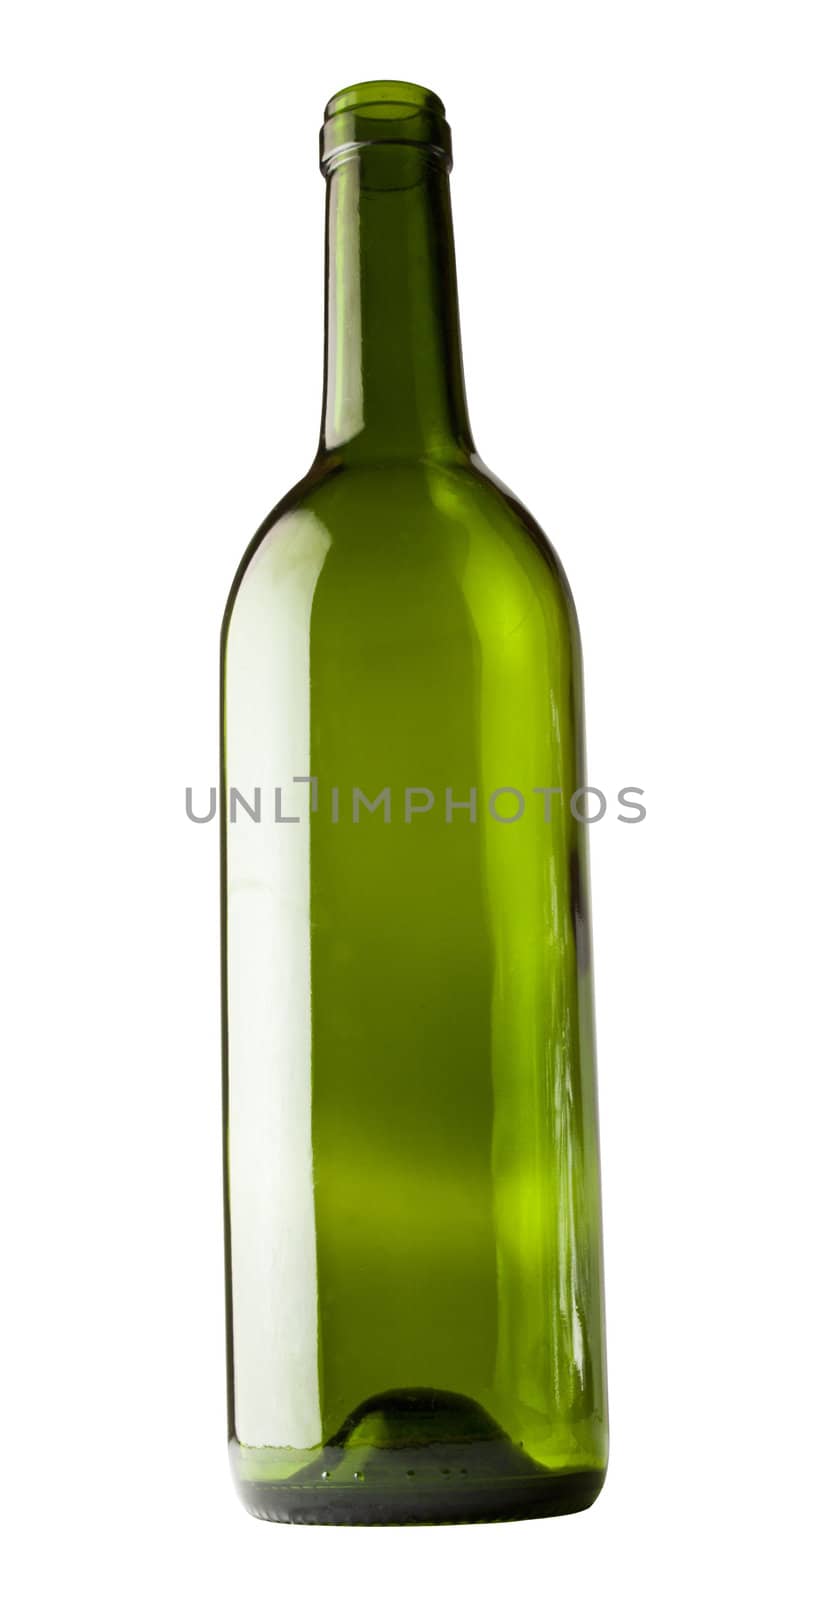 Wine bottle isolated against white background